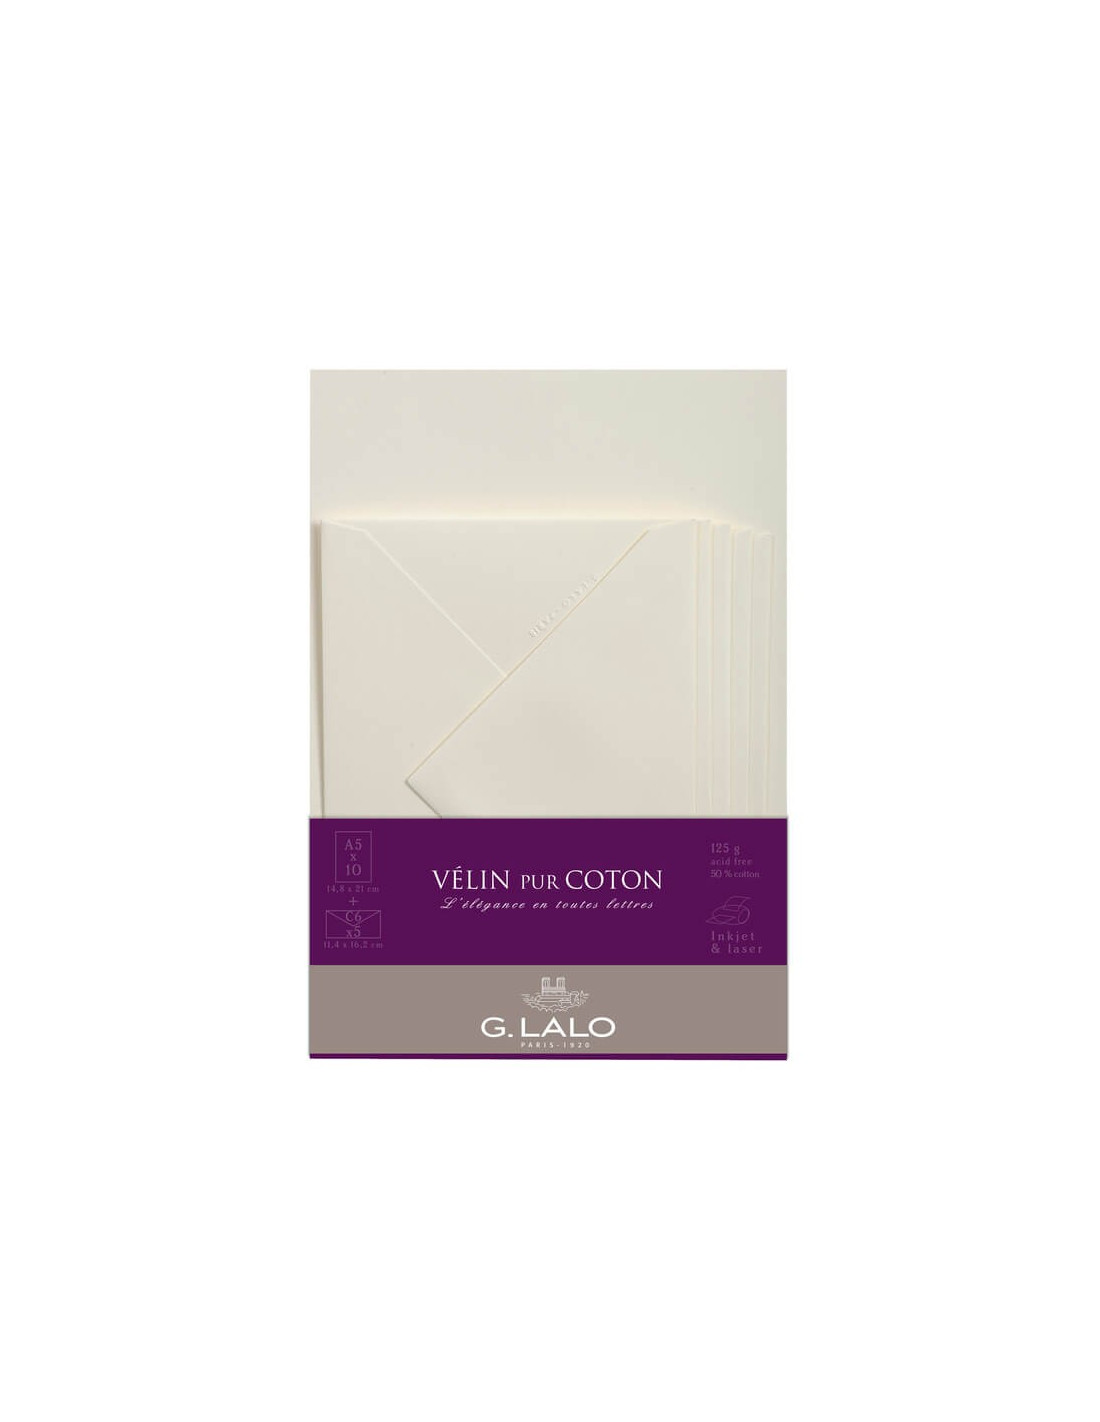 Papier Velin Crème pur coton G-Lalo A4 125 gr 20 feuilles - Mille